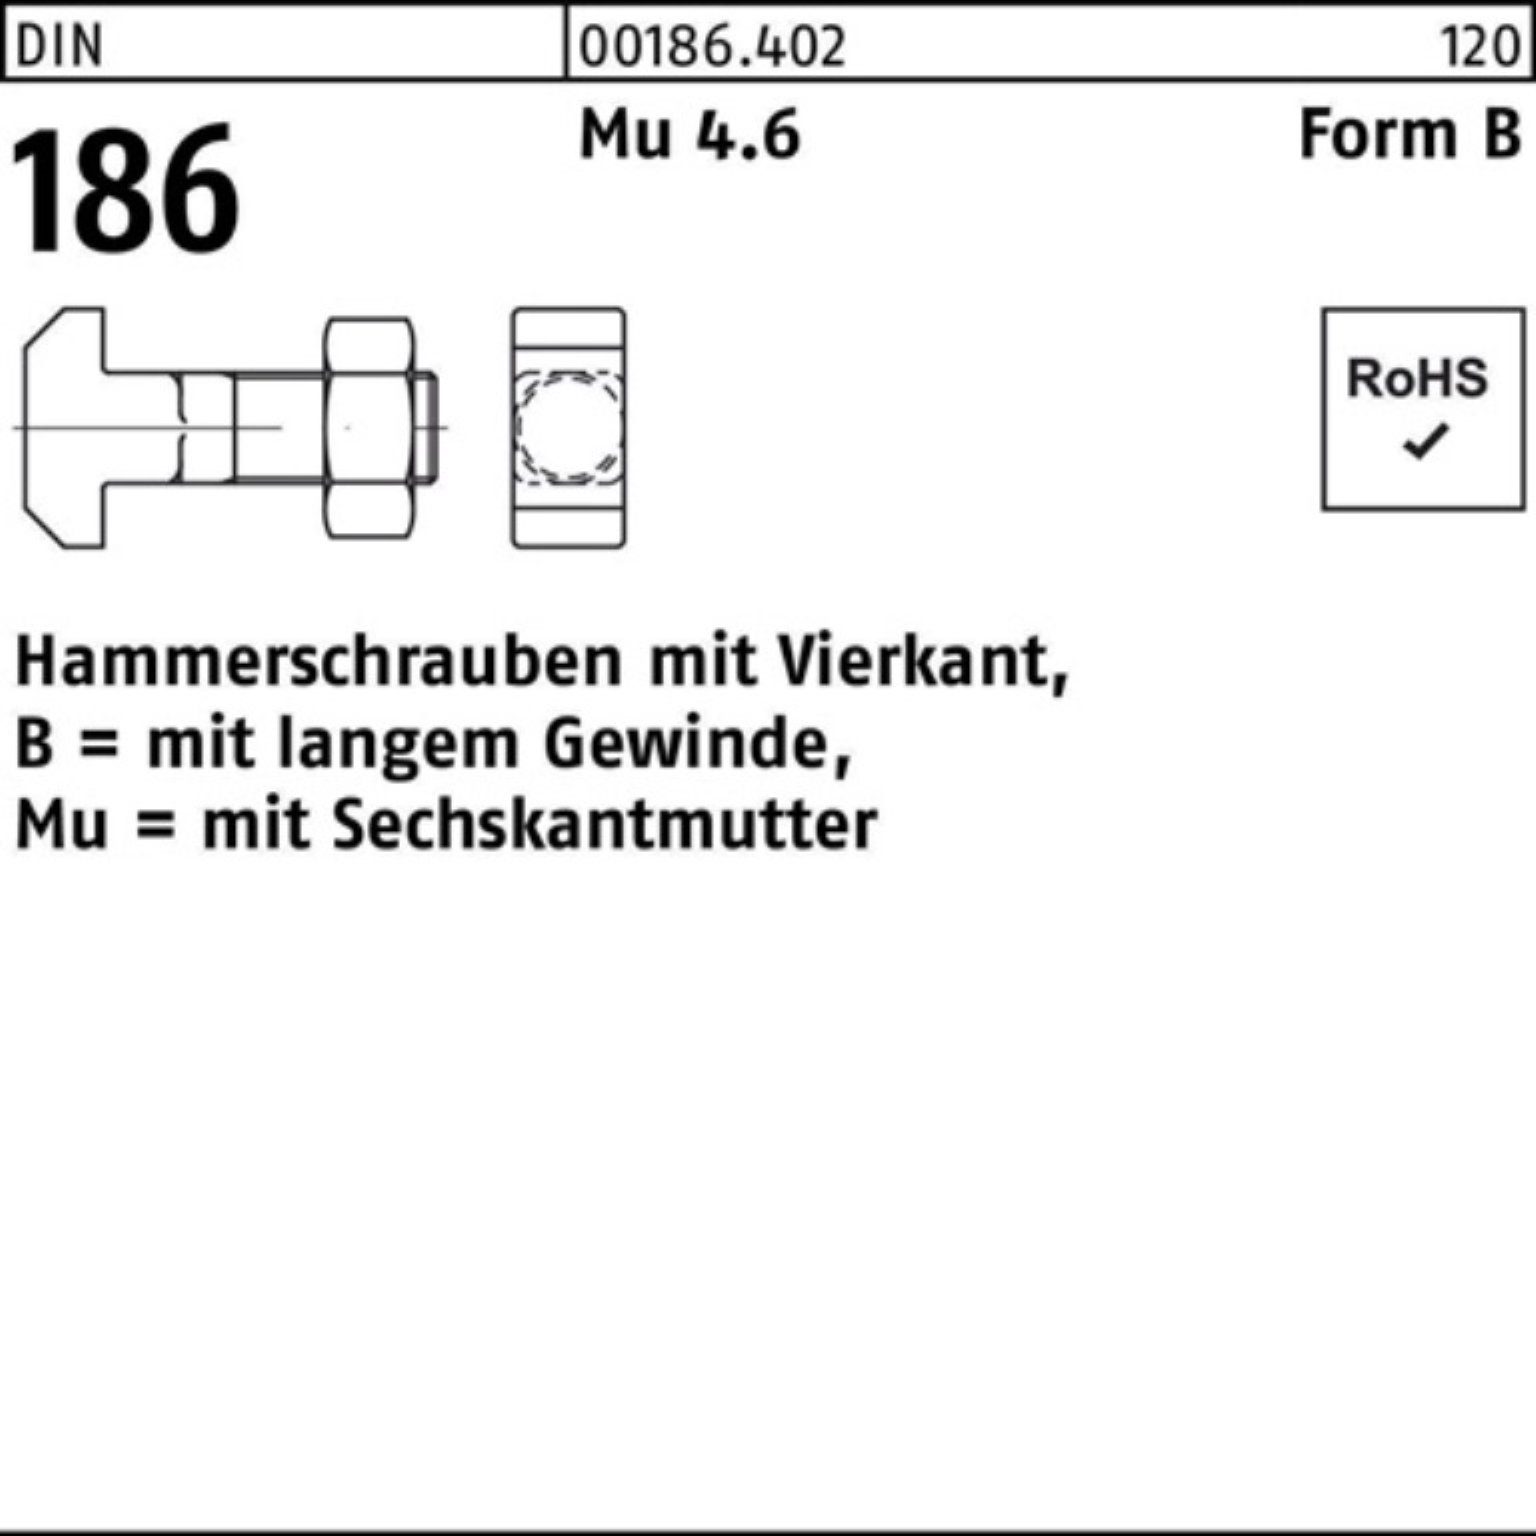 FormB Reyher Hammerschraube 100er Pack Vierkant DIN 6-ktmutter 40 Schraube BM 186 12x